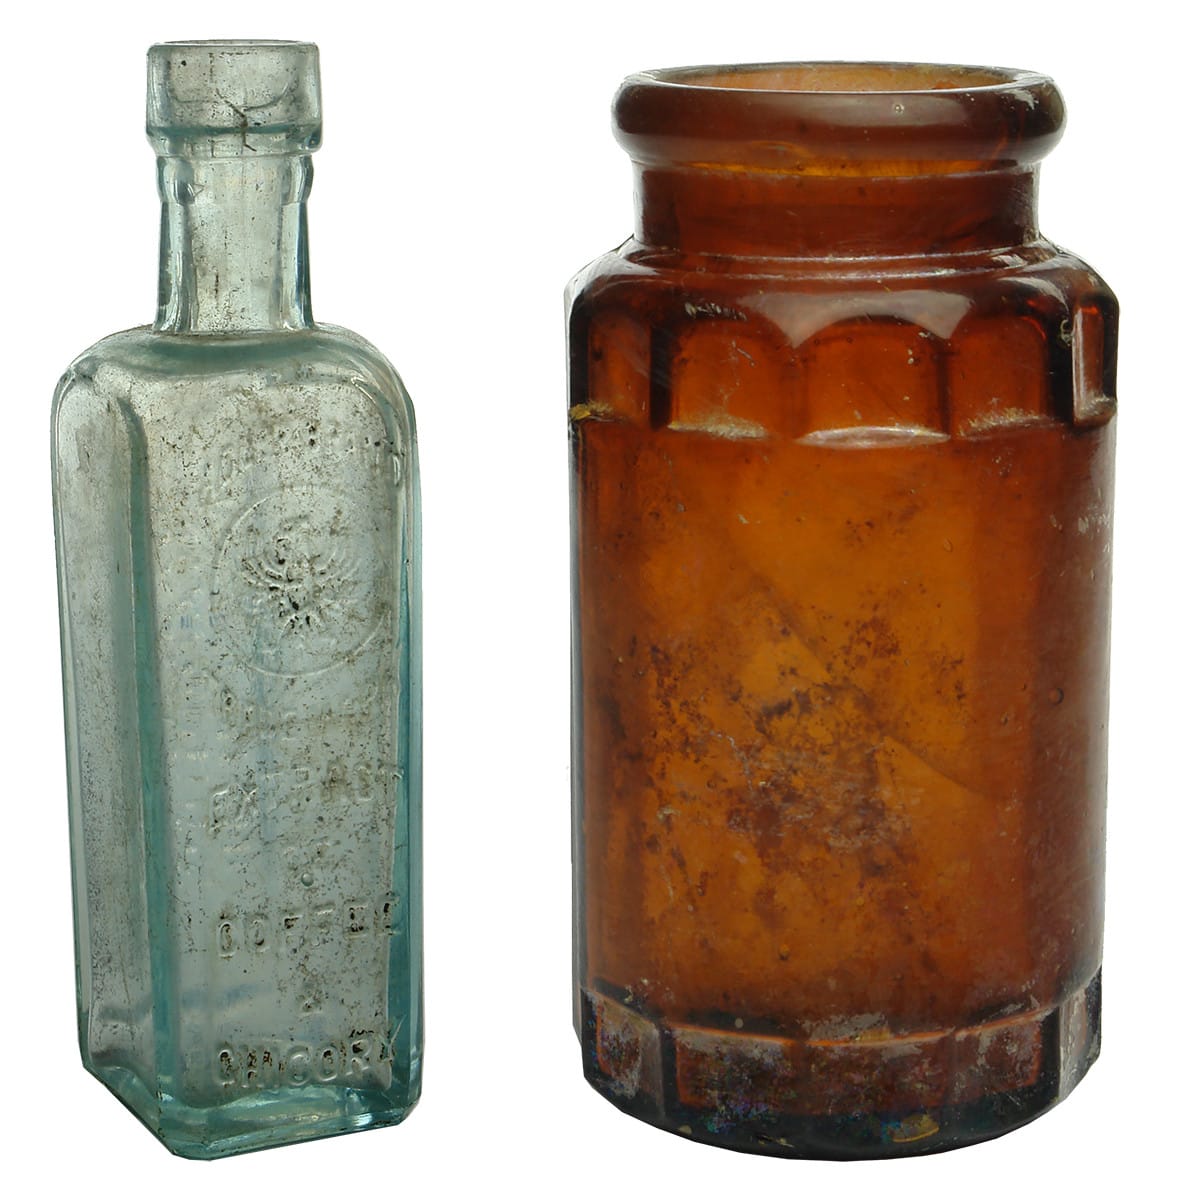 Two Household Bottles: Adler Brand Coffee & Plain amber "Rosella" style jar.